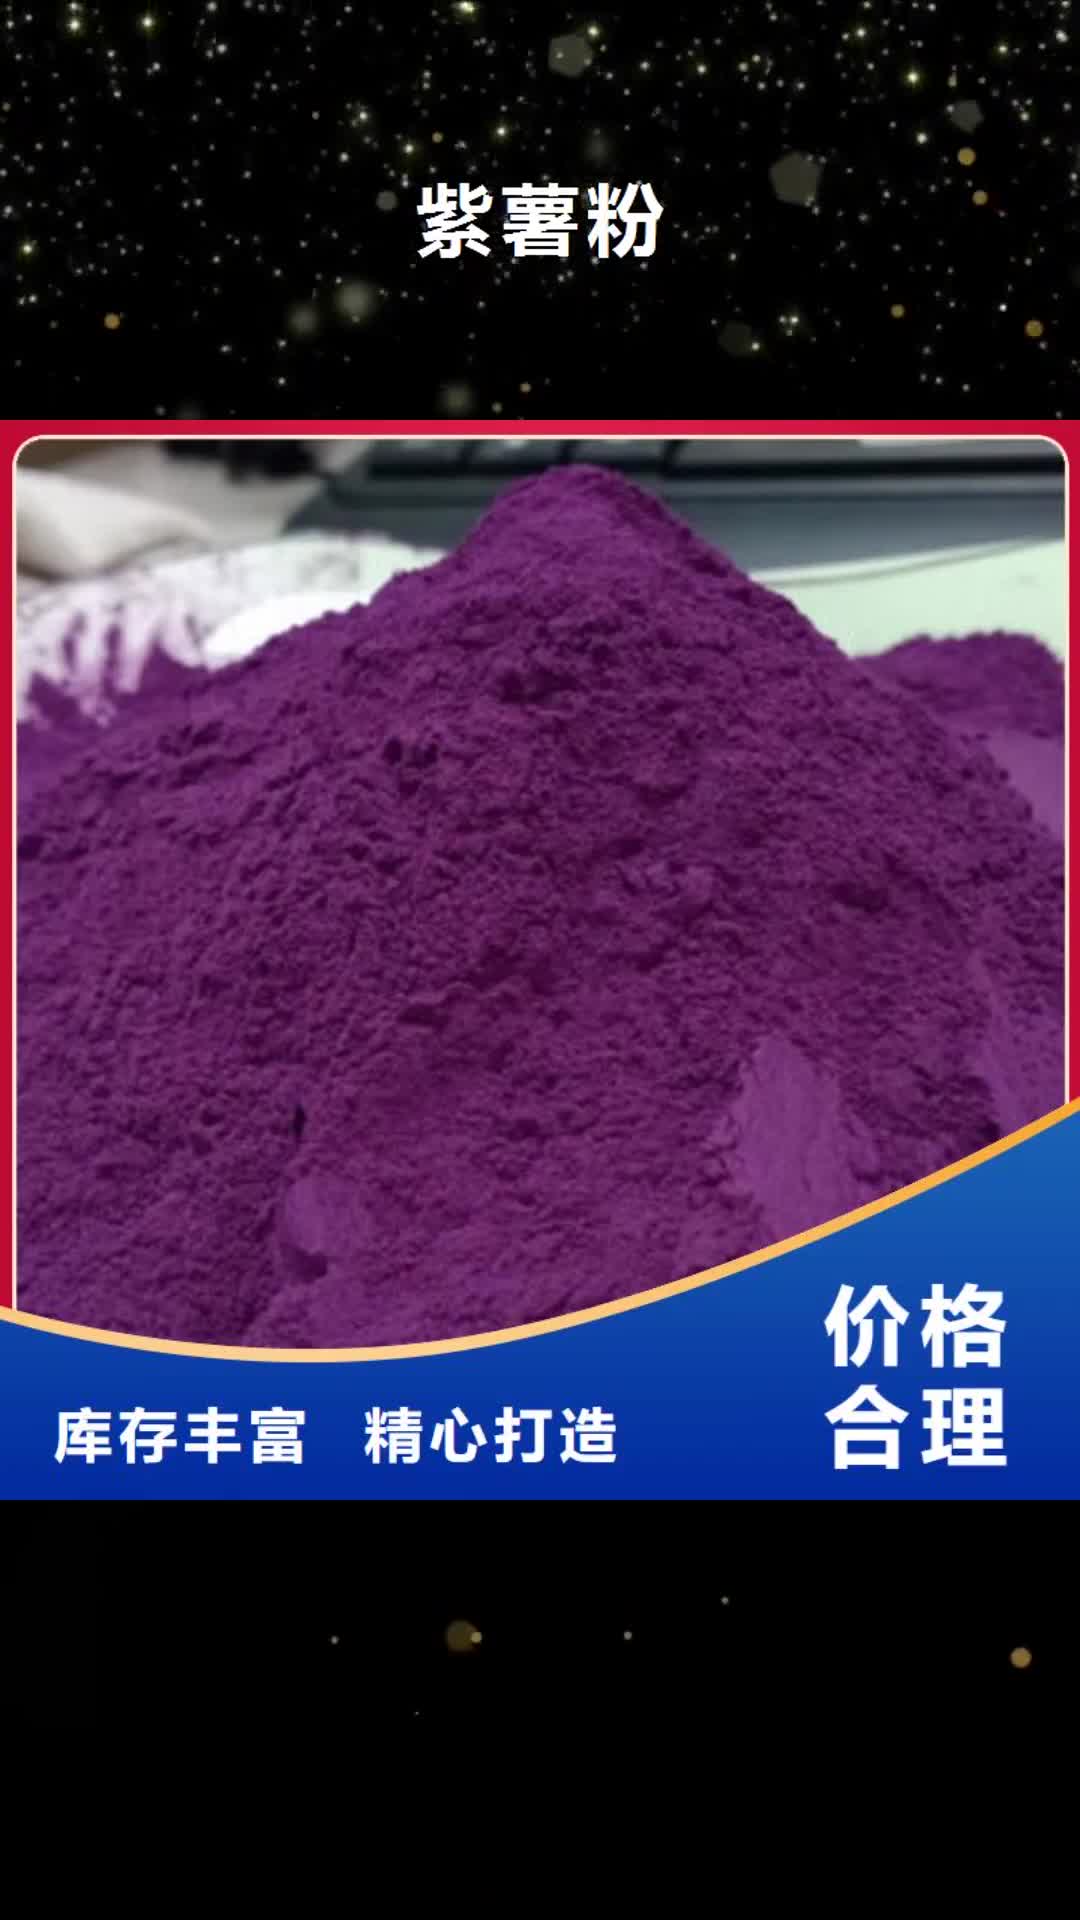 【杭州 紫薯粉,紫薯雪花片质量安全可靠】